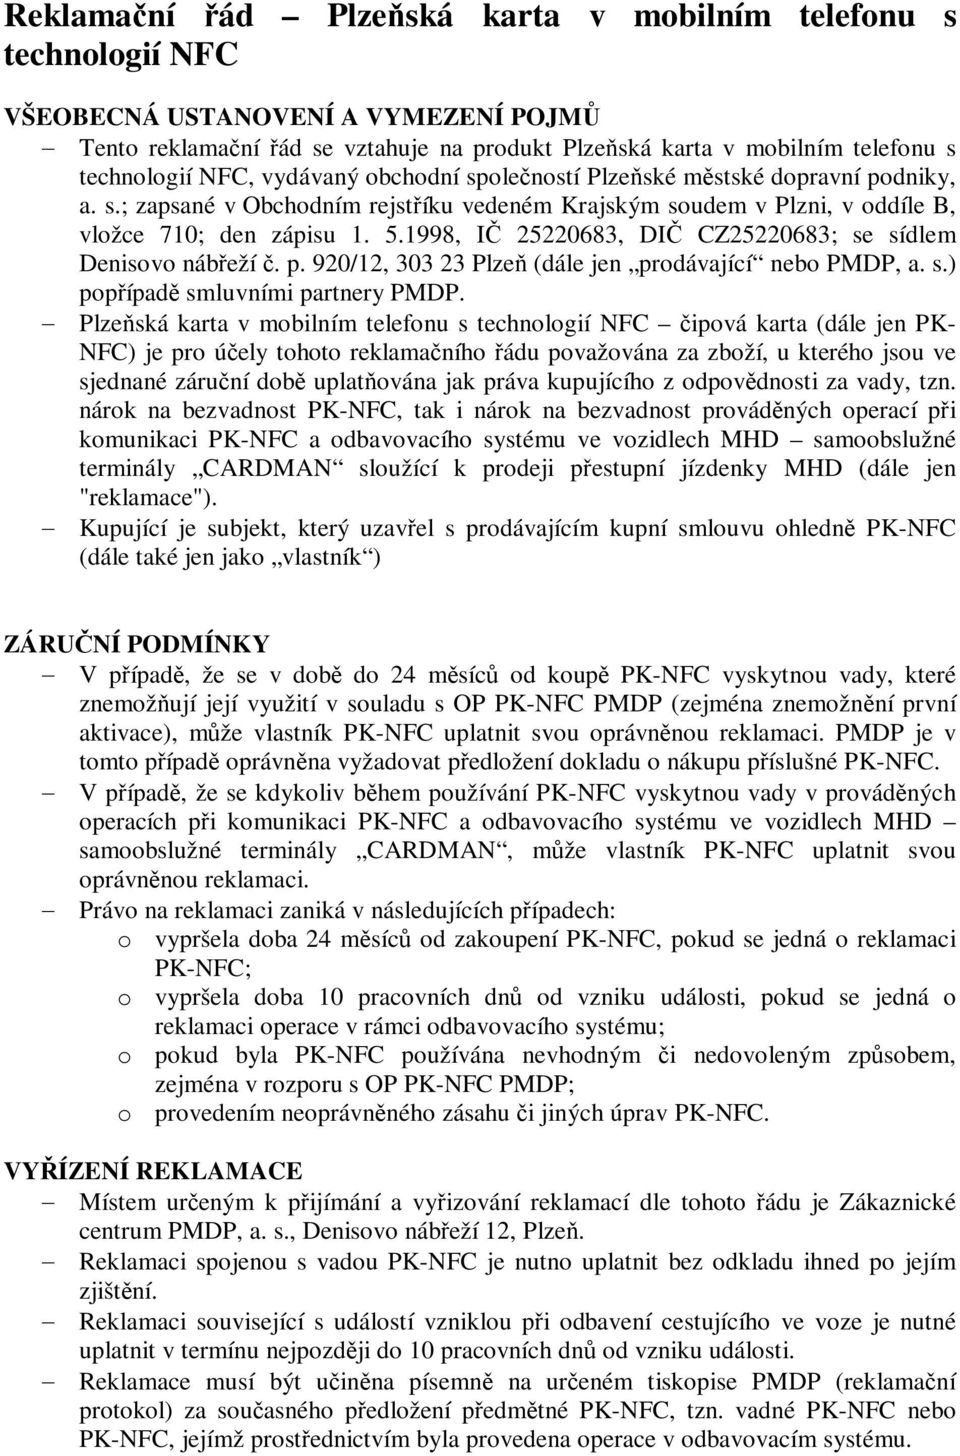 1998, I 25220683, DI CZ25220683; se sídlem Denisovo nábeží. p. 920/12, 303 23 Plze (dále jen prodávající nebo PMDP, a. s.) popípad smluvními partnery PMDP.